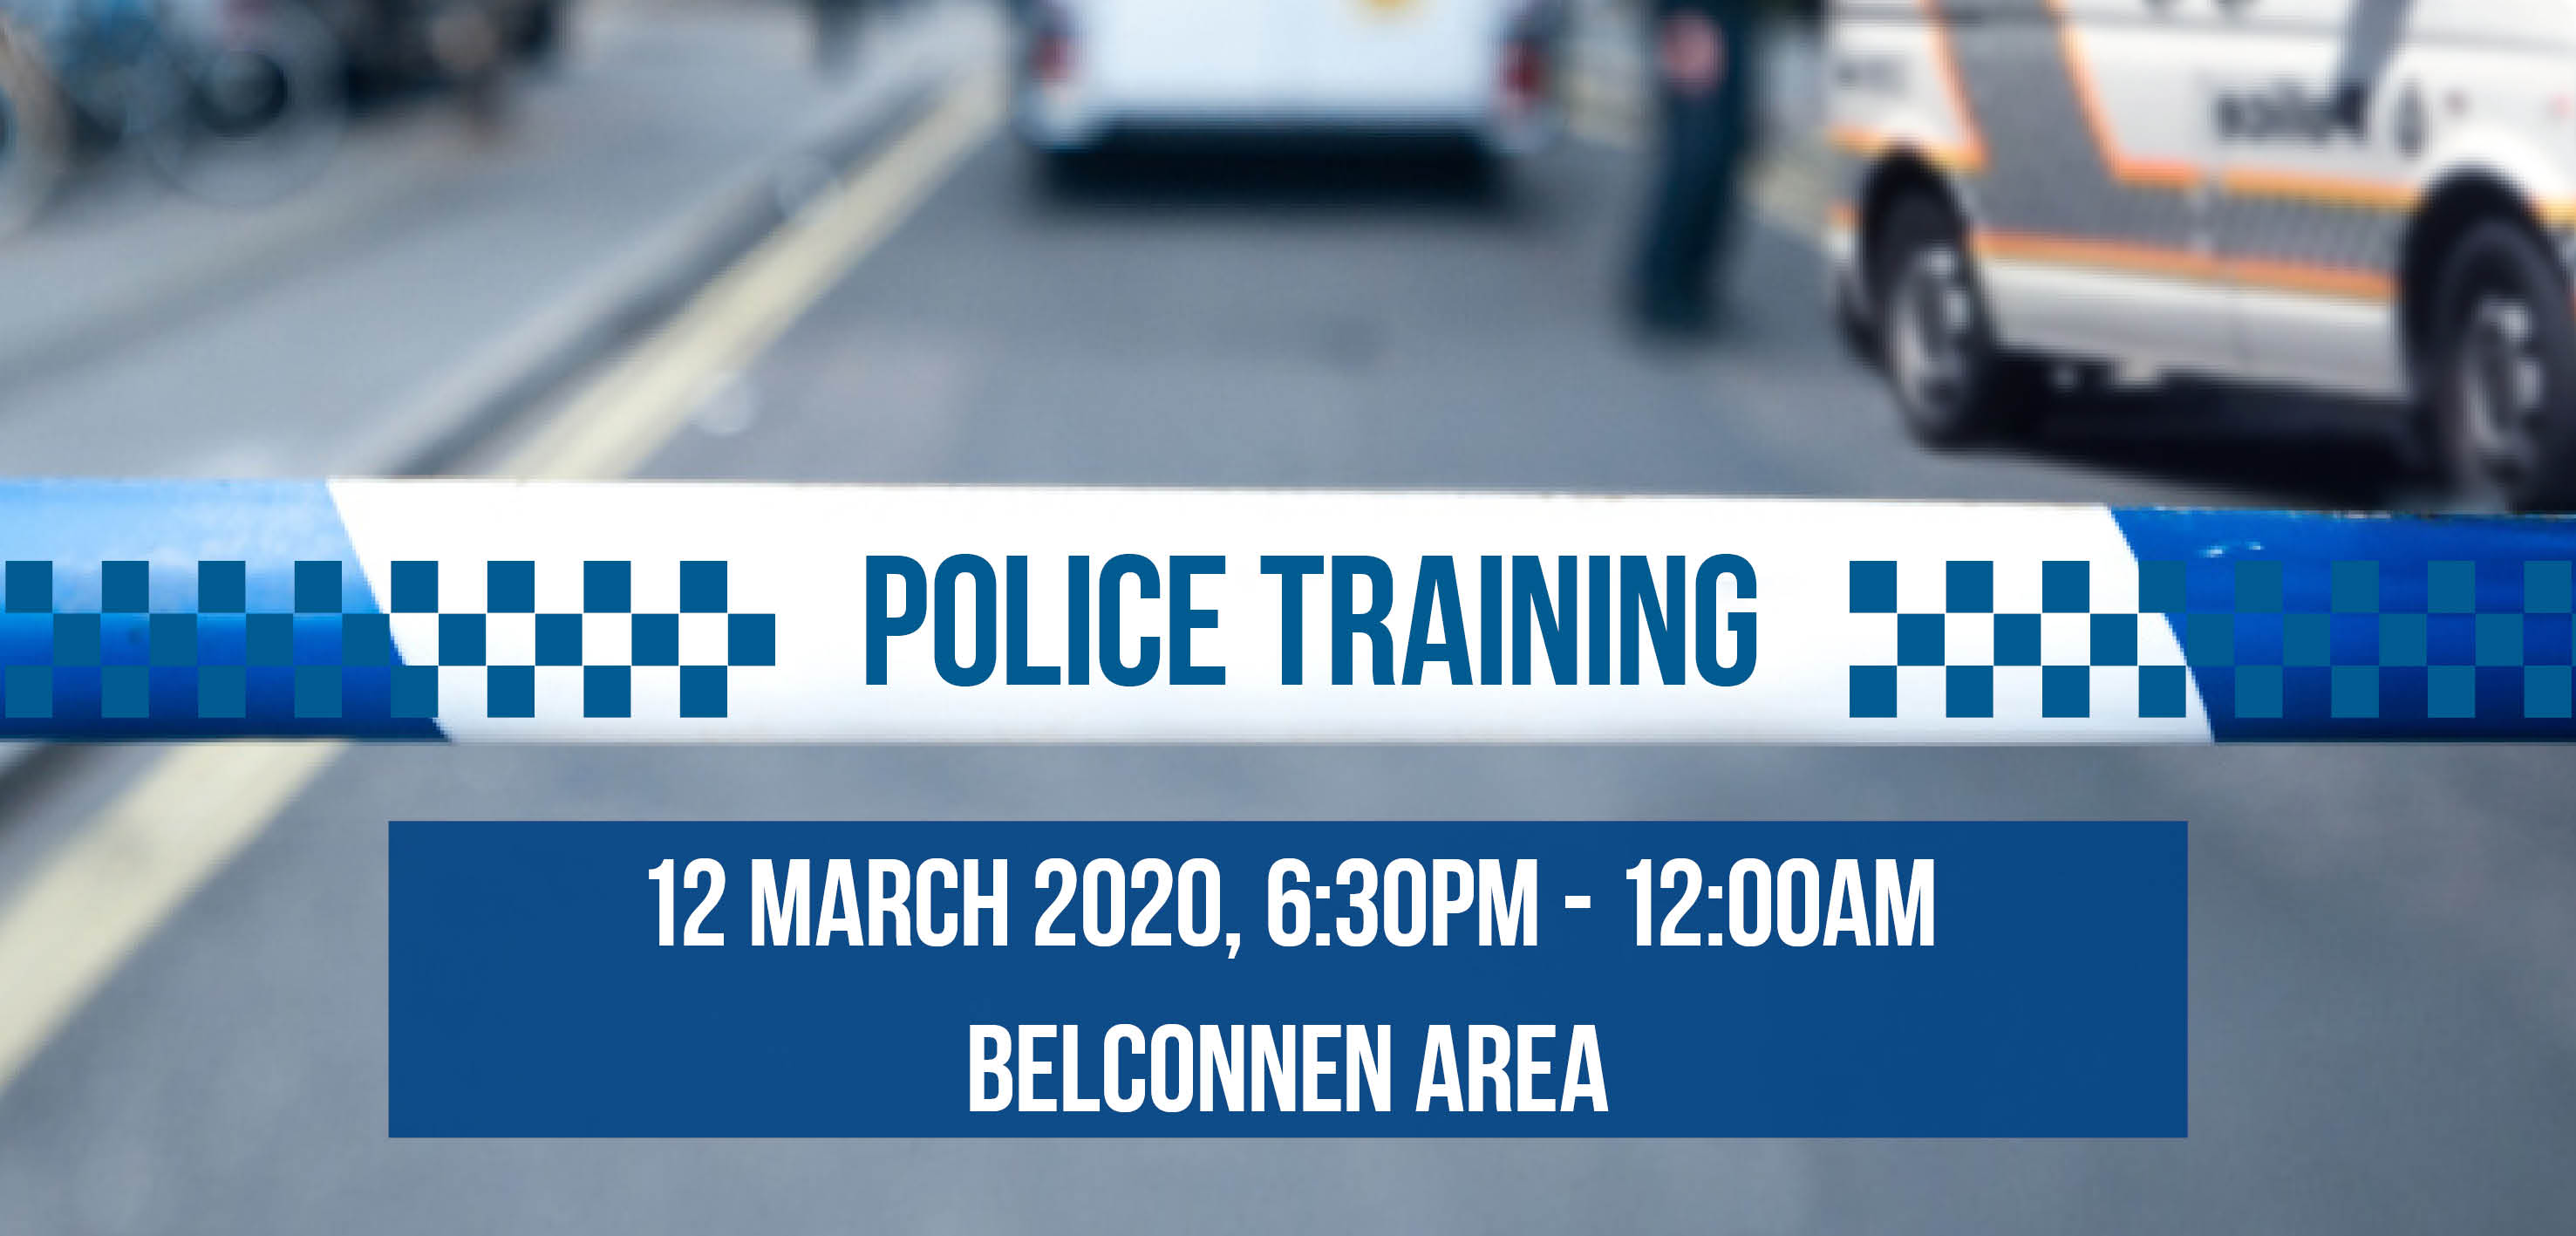 Police training exercise Belconnen.jpg